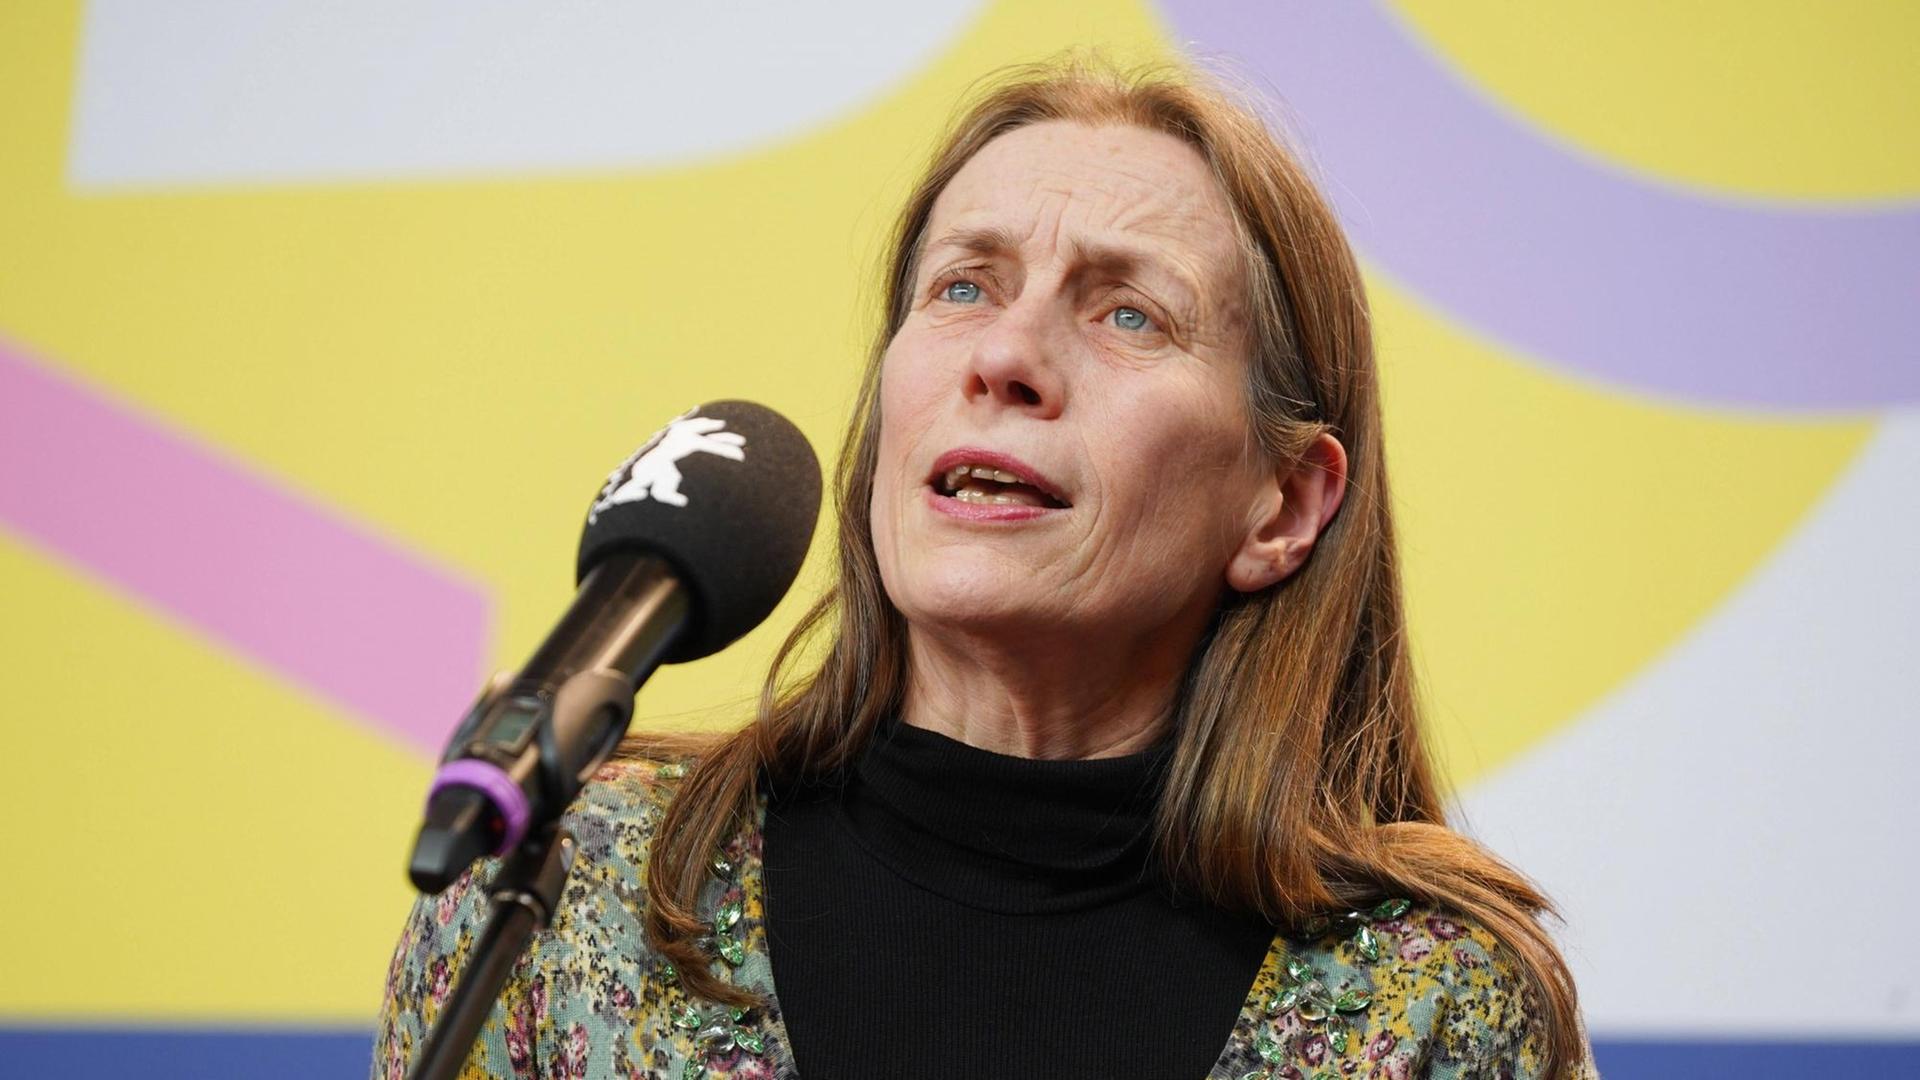 Festivalleiterin Mariette Rissenbeek im Februar 2020 bei der 70.Berlinale.